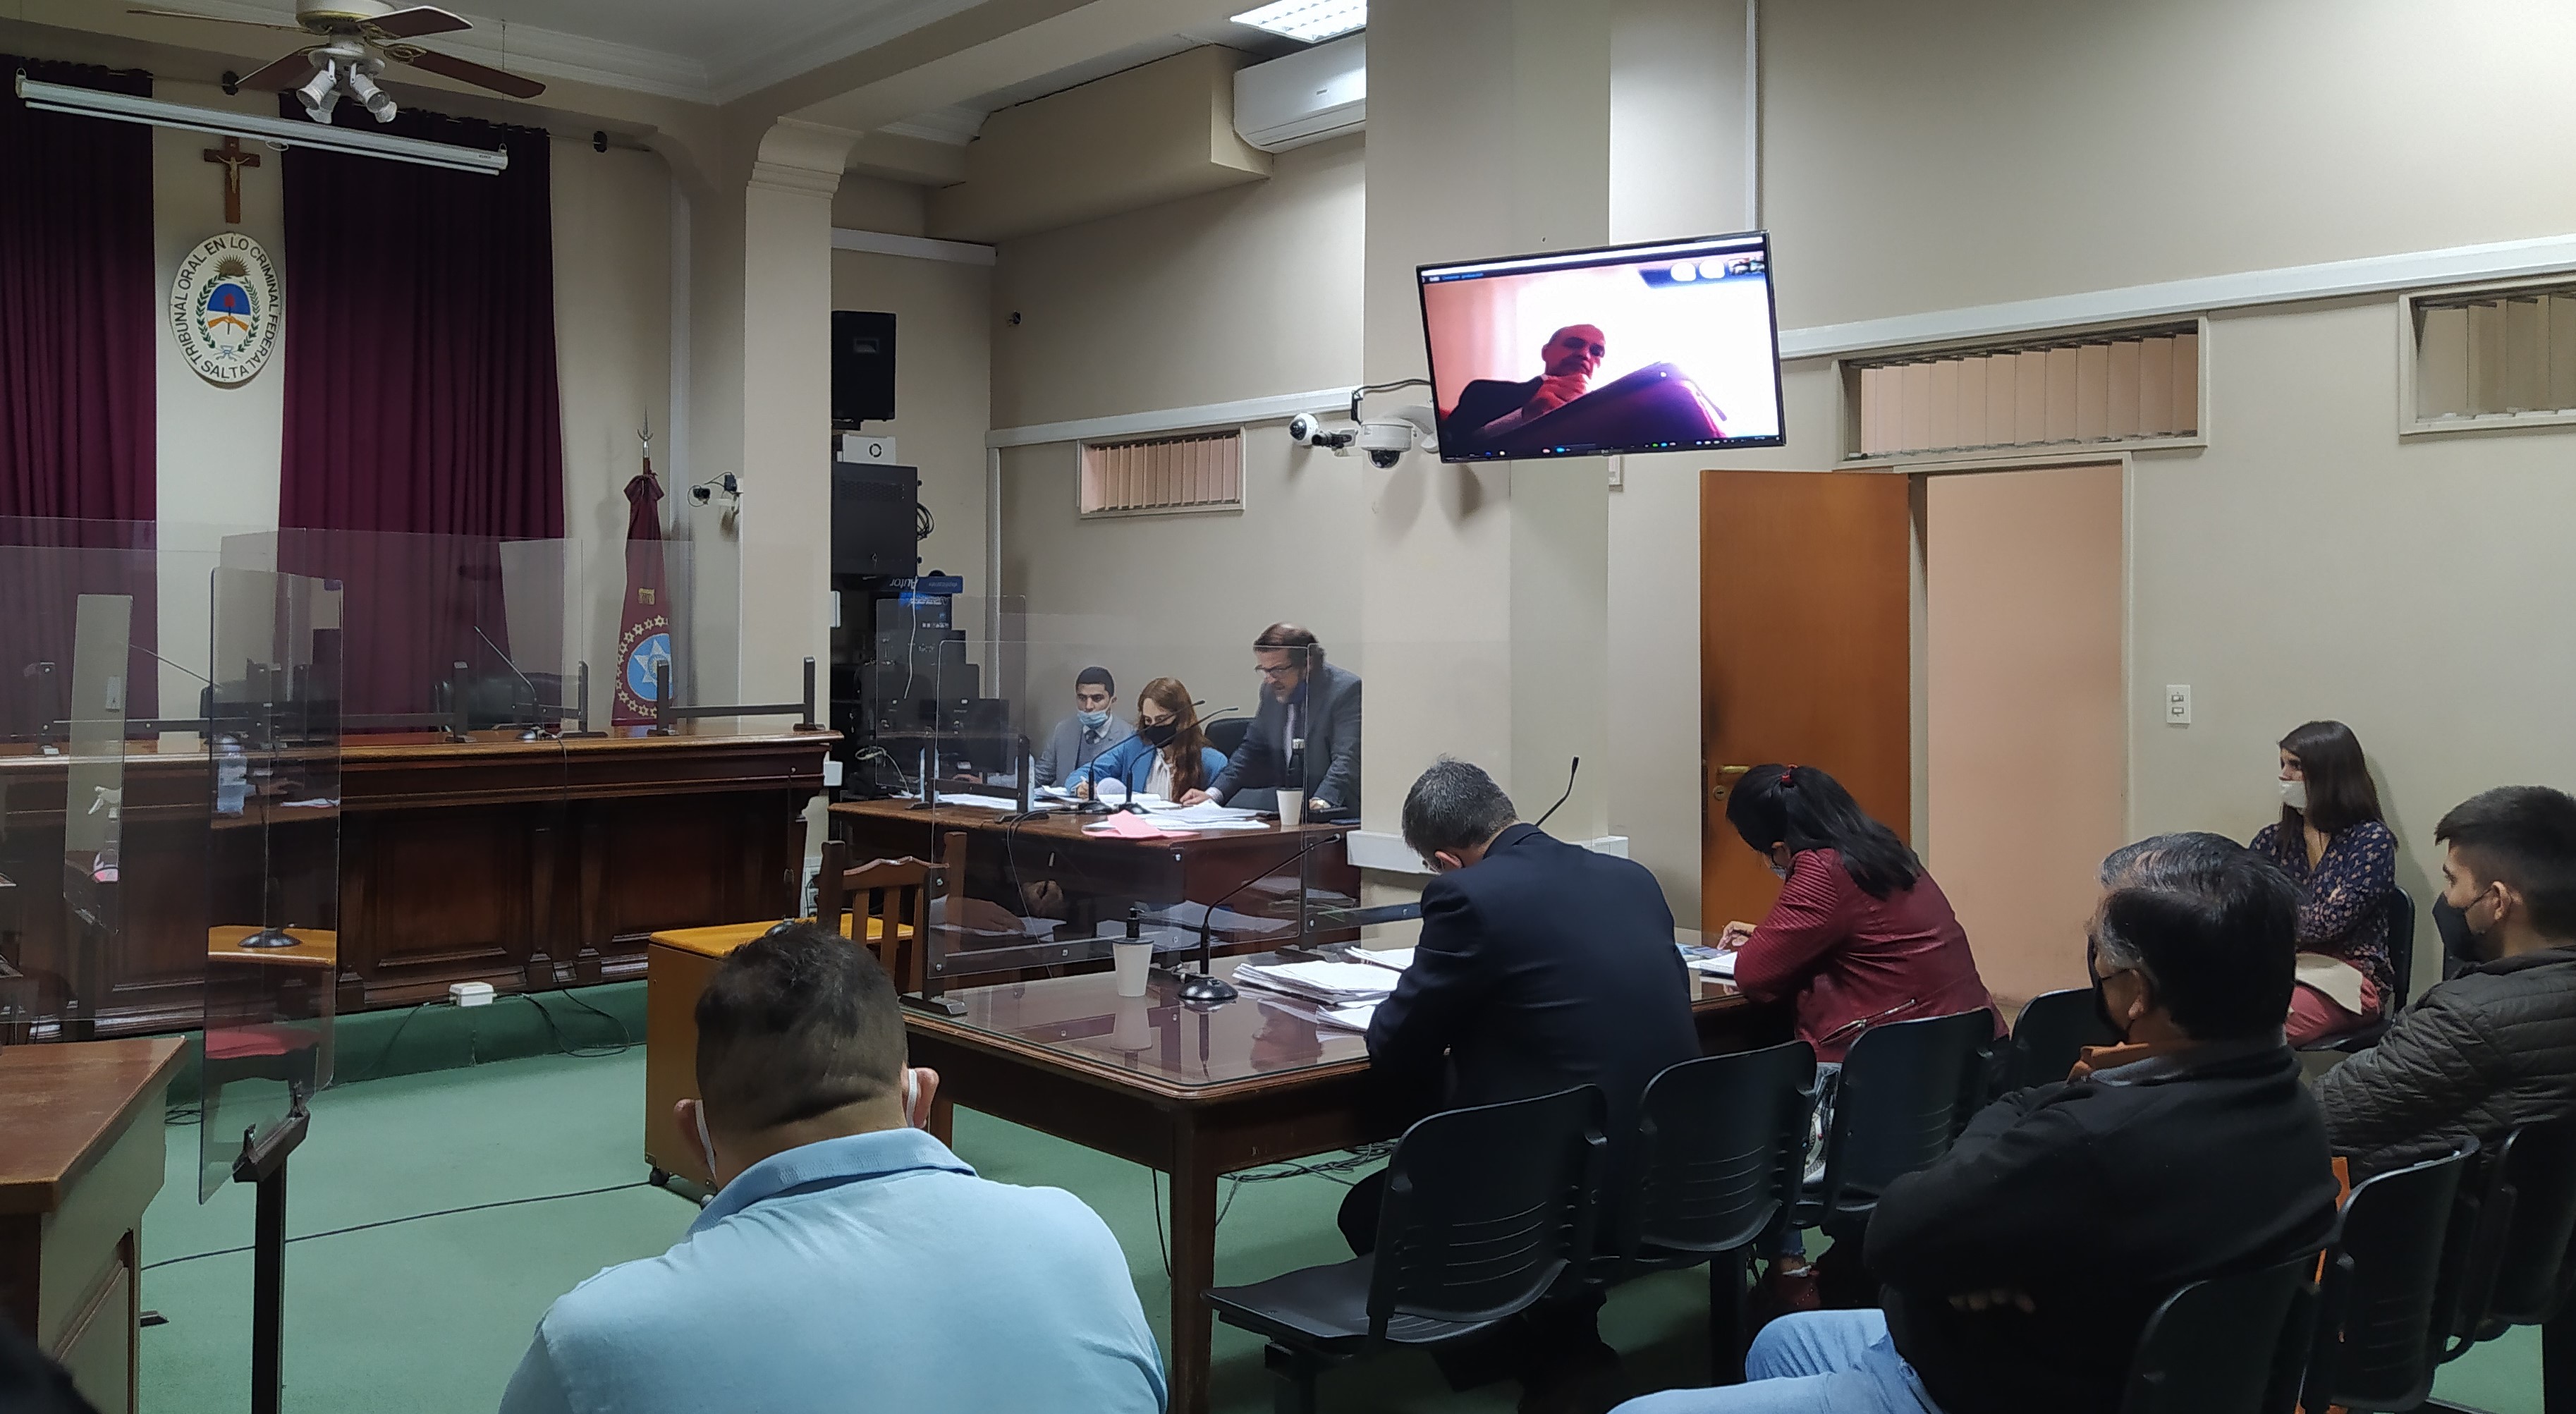 El fiscal Villalba expone el alegato durante la audiencia del 27 de abril pasado ante el Tribunal Oral Federal N°1. - Sebastián Rodríguez/Fiscales.gob.ar